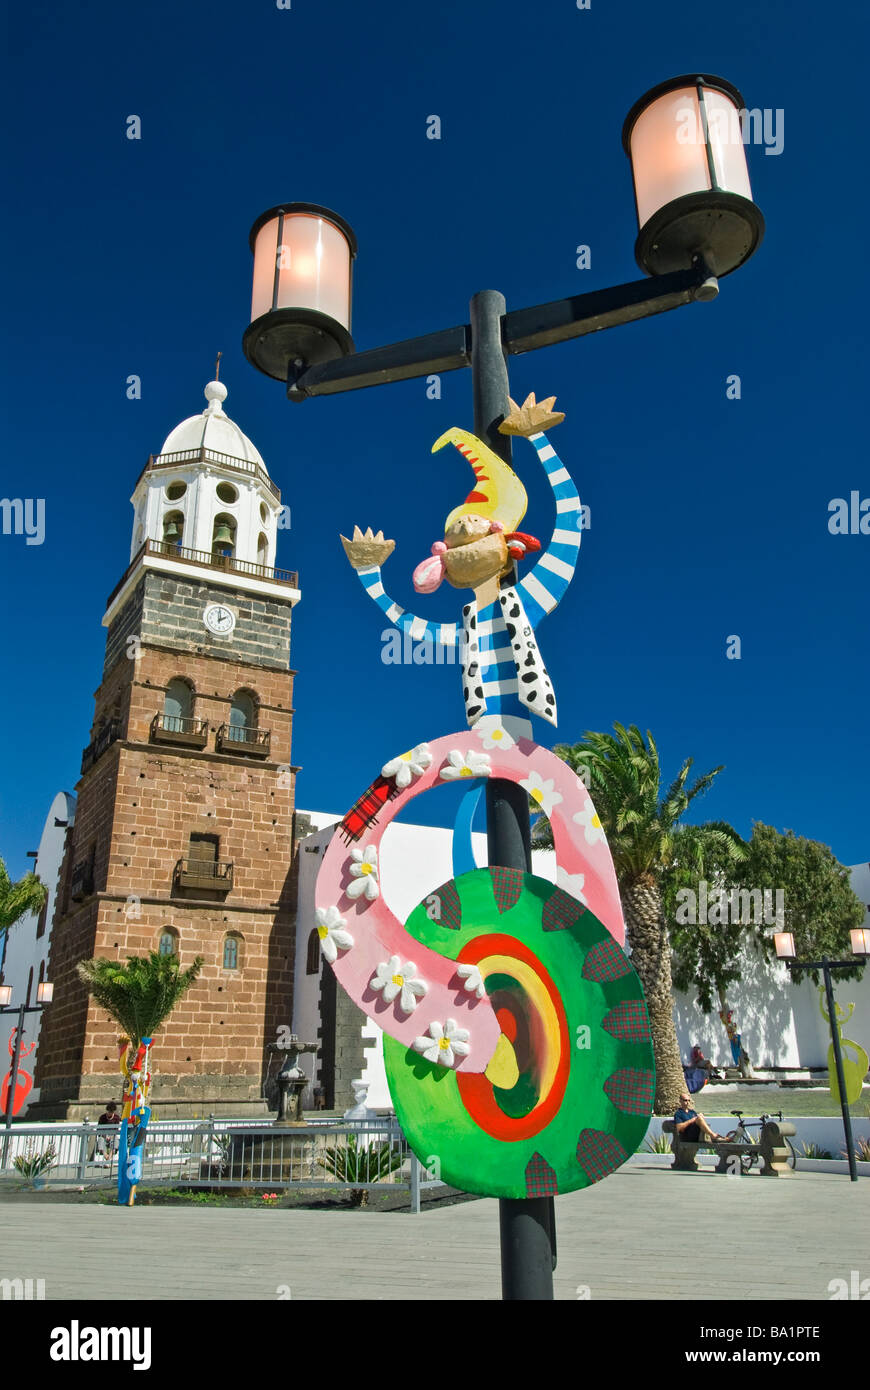 Vieille ville de Teguise avec place principale de lumière dans les rues décorées pour célébrations Îles Canaries Lanzarote fiesta Banque D'Images